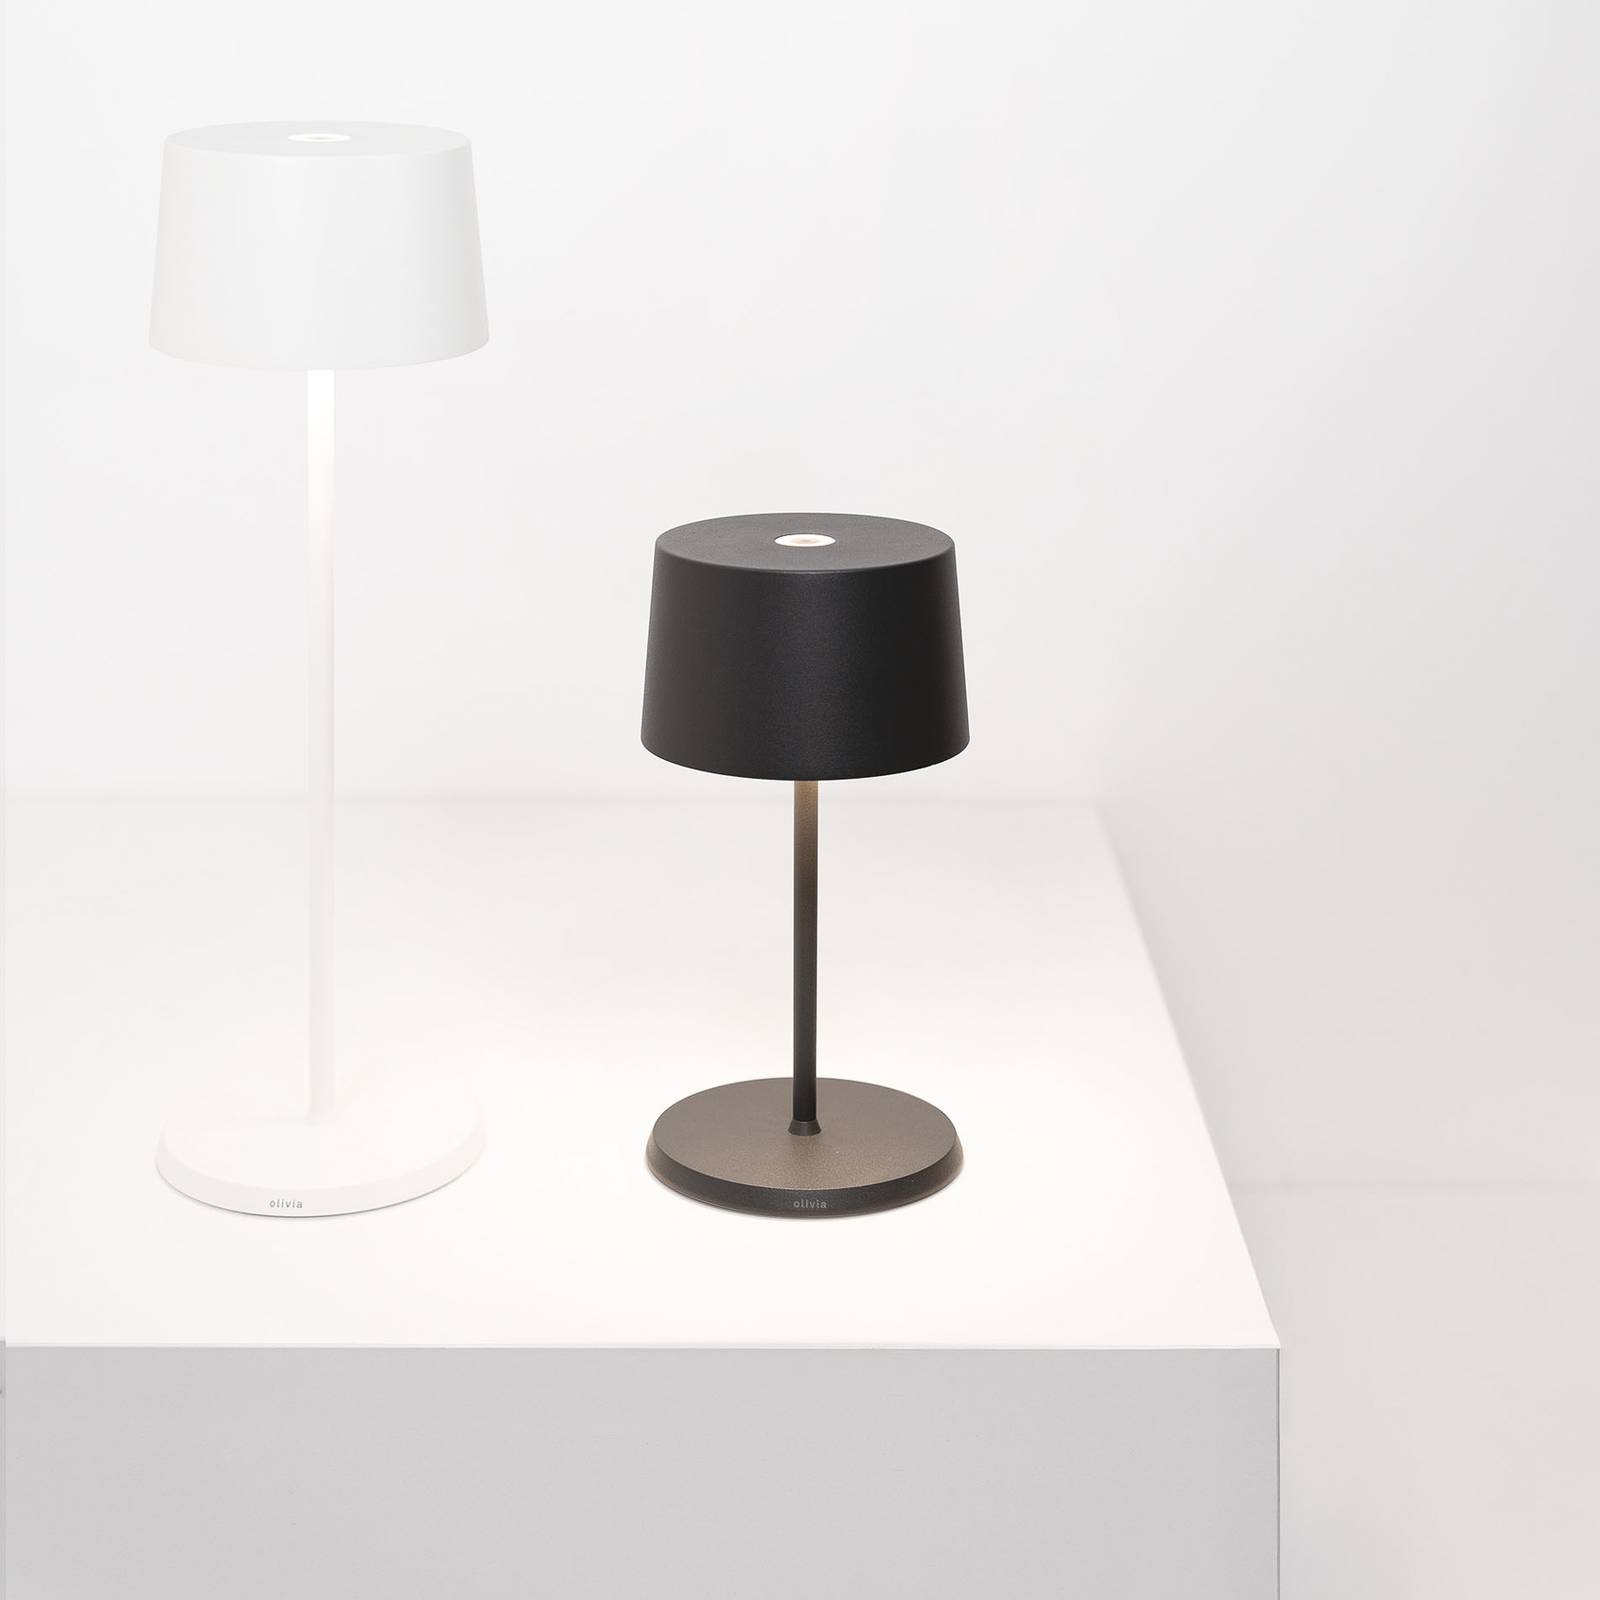 Zafferano olivia mini 3k újratölthető asztali lámpa szürke